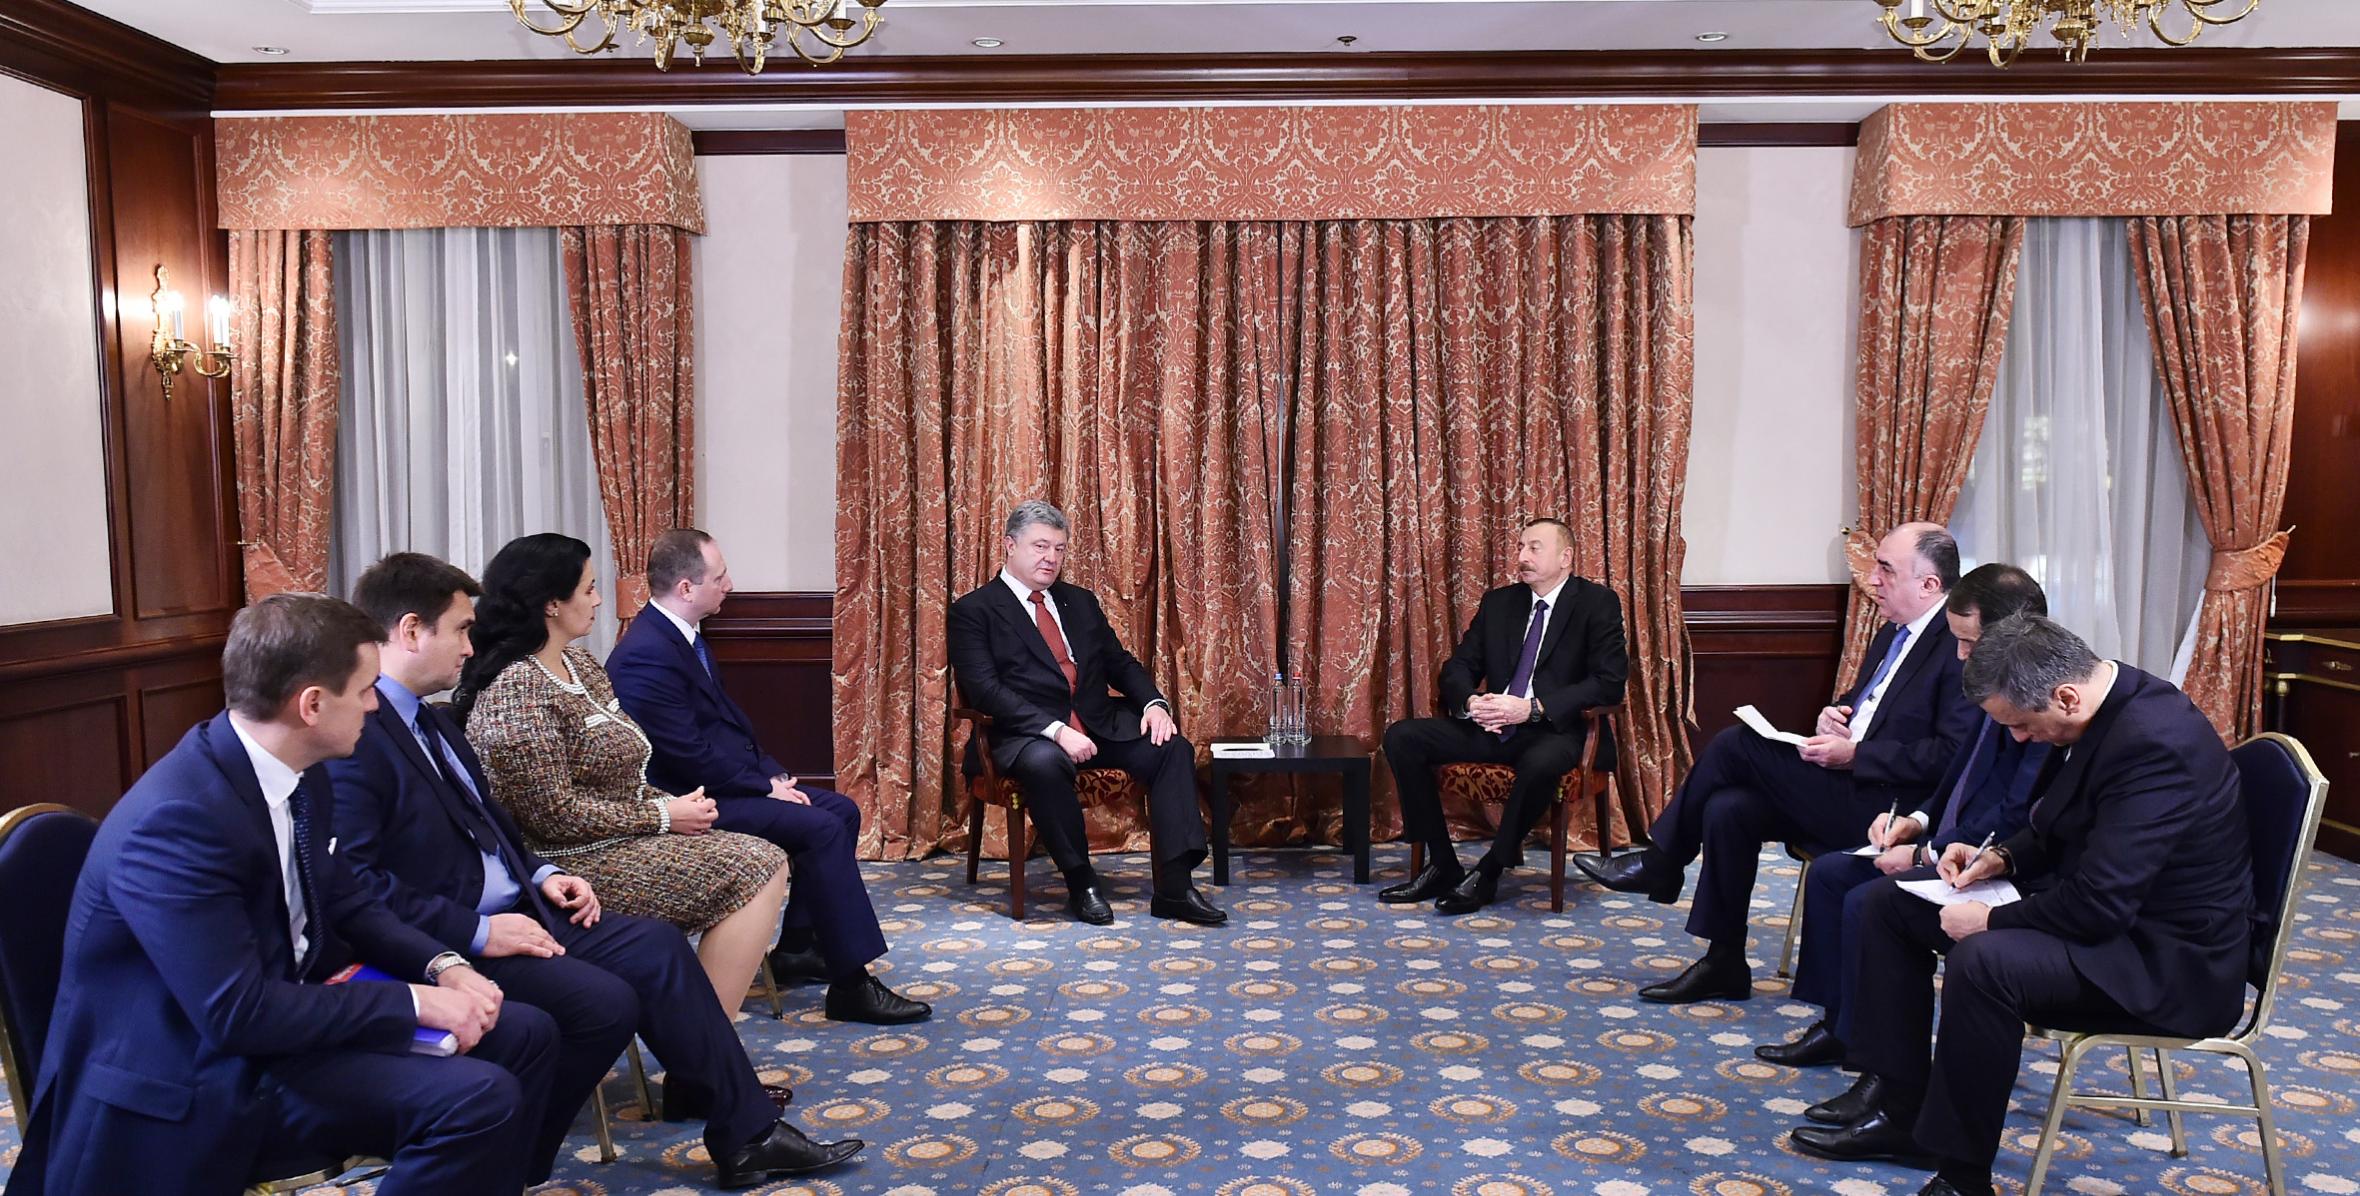 Ilham Aliyev met with Ukrainian President Petro Poroshenko in Brussels